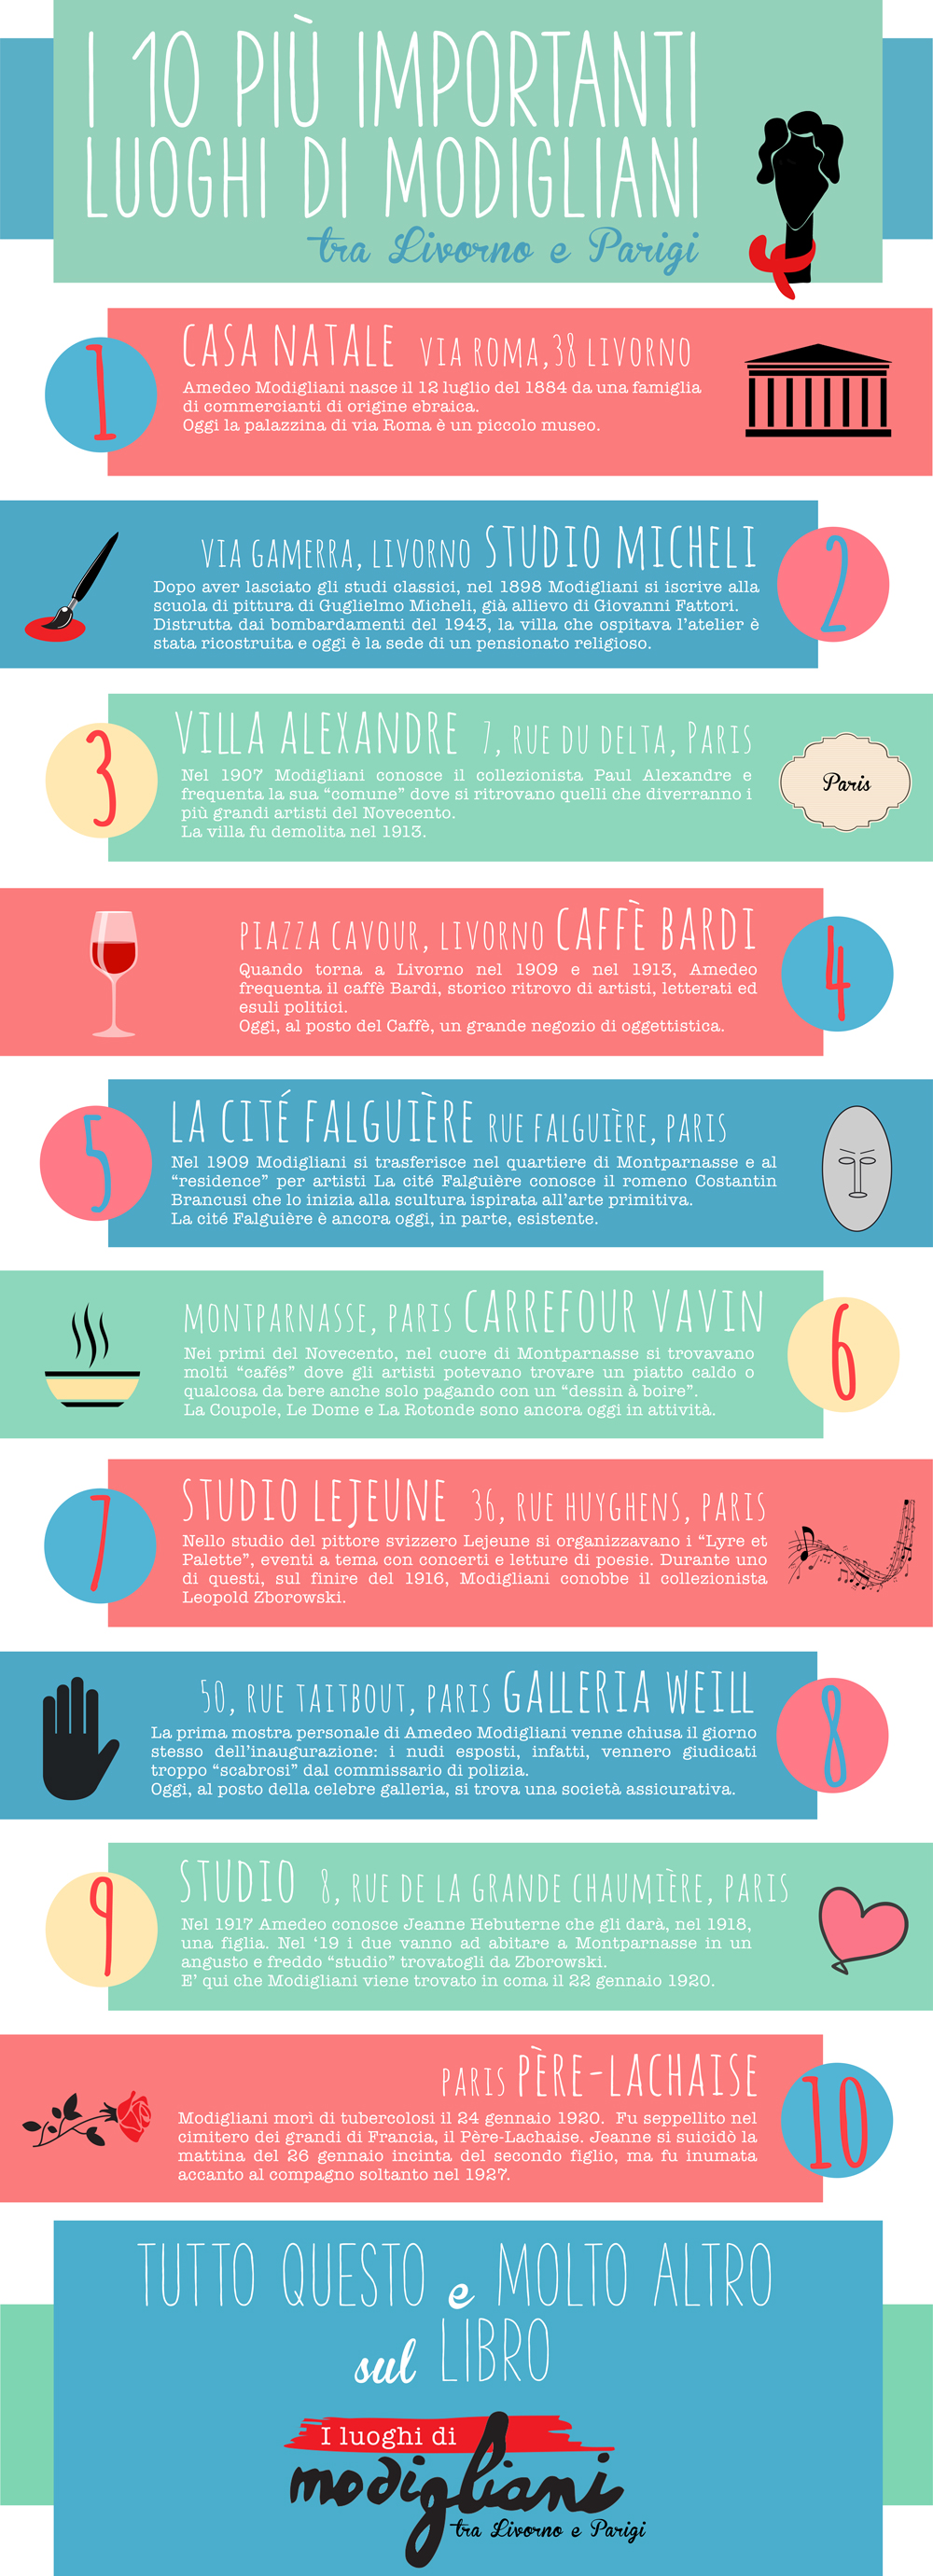 Infografica I luoghi di Modigliani